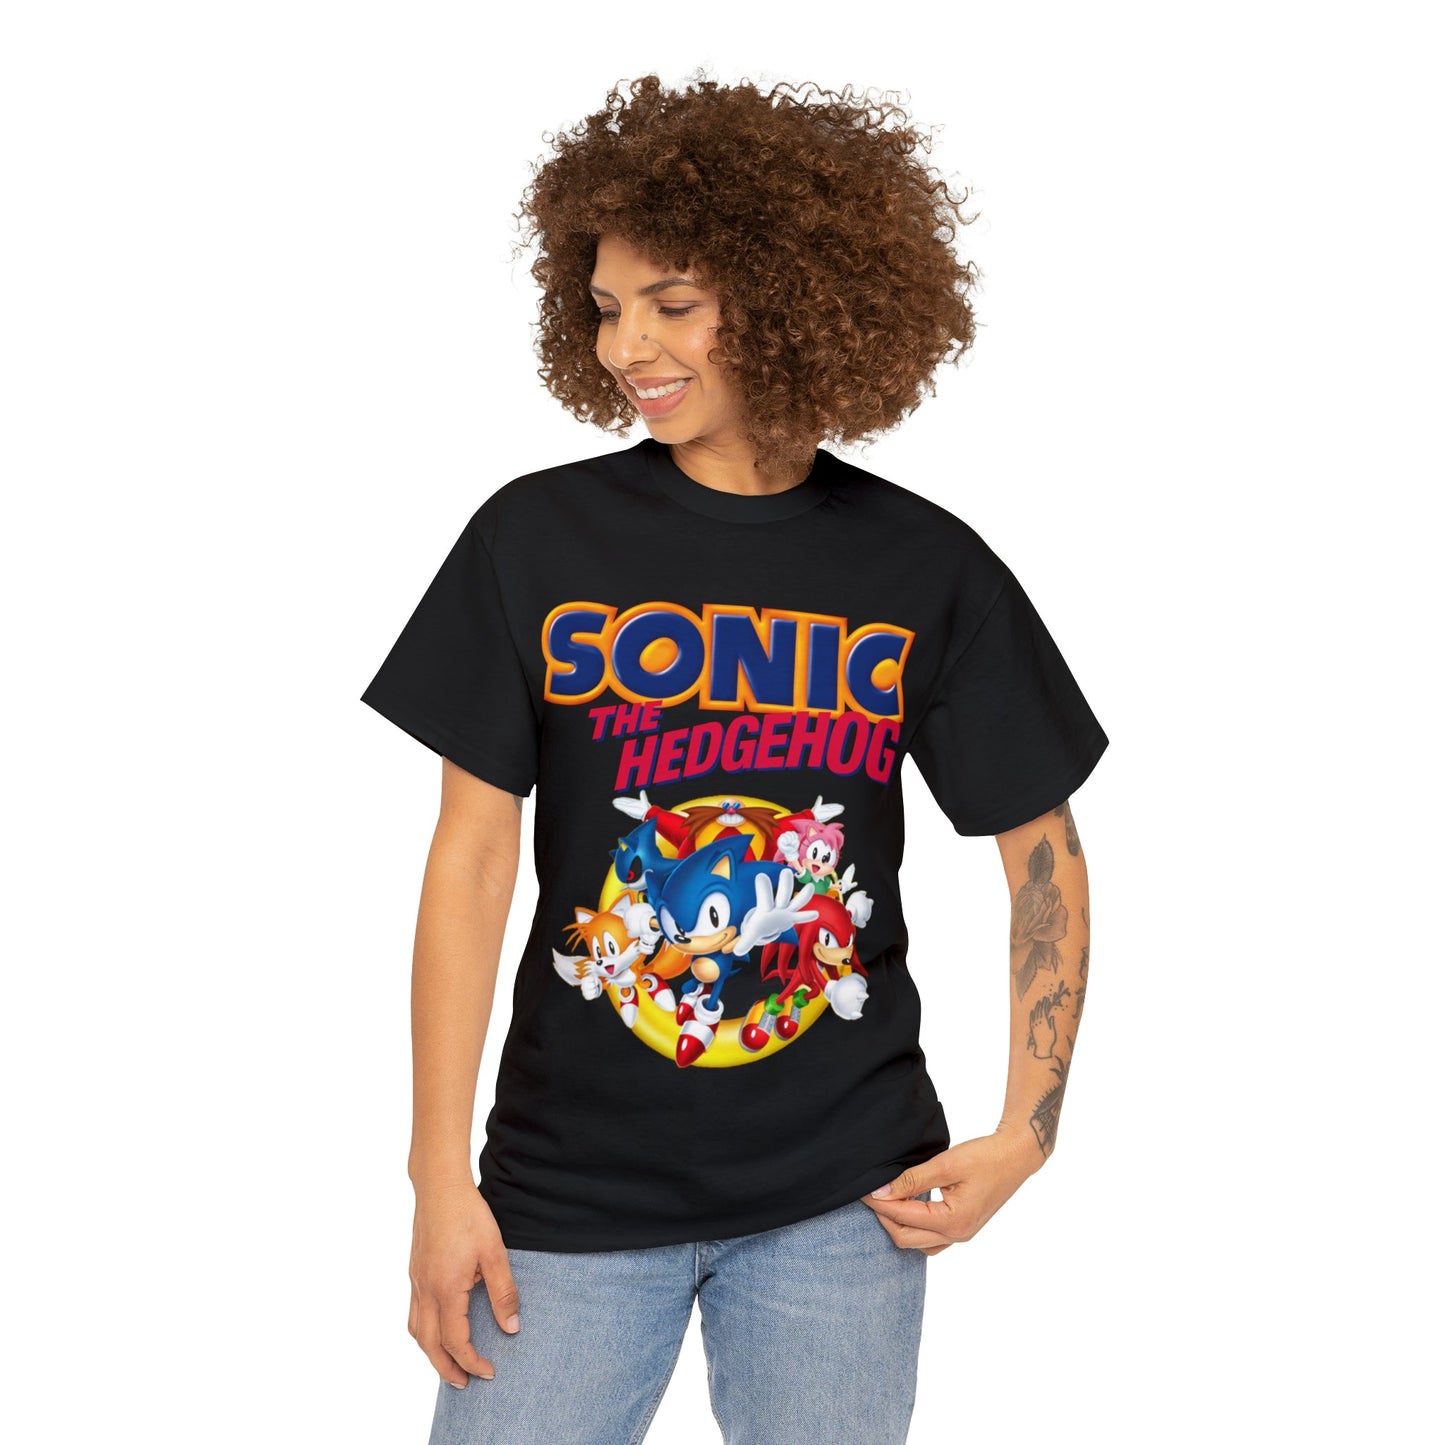 Sonic The Hedgehog Sega T-Shirt - RetroTeeShop